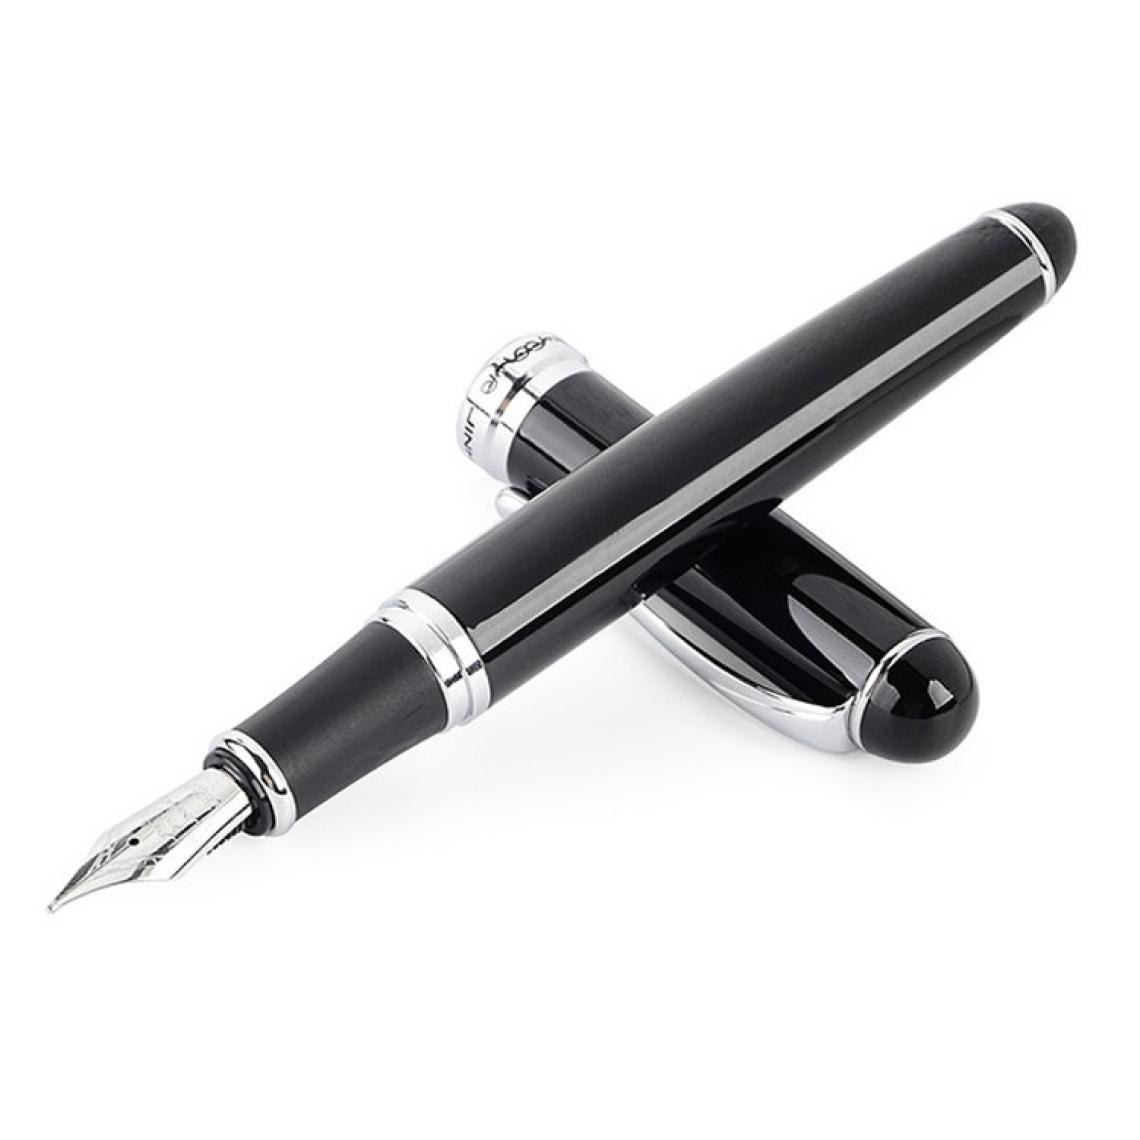 Wewoo - X750 papeterie en acier inoxydable stylo plume moyenne stylos encre cadeau école cadeautaille 1.0mm noir - Accessoires Bureau